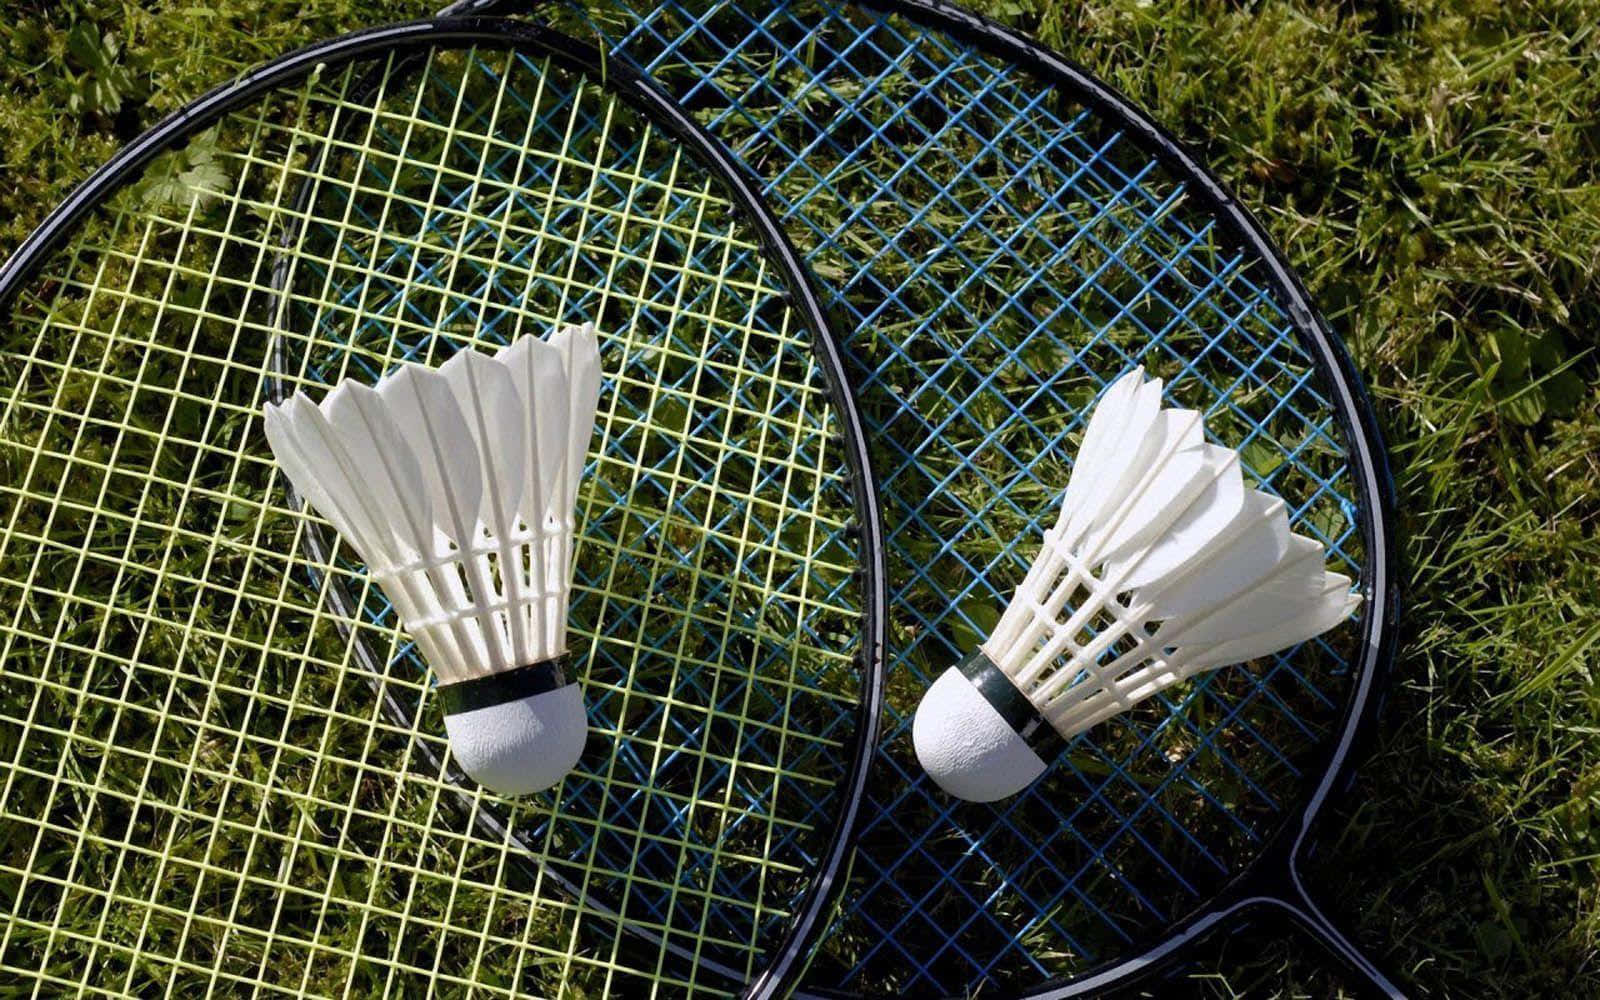 Partitadi Badminton Piena D'azione